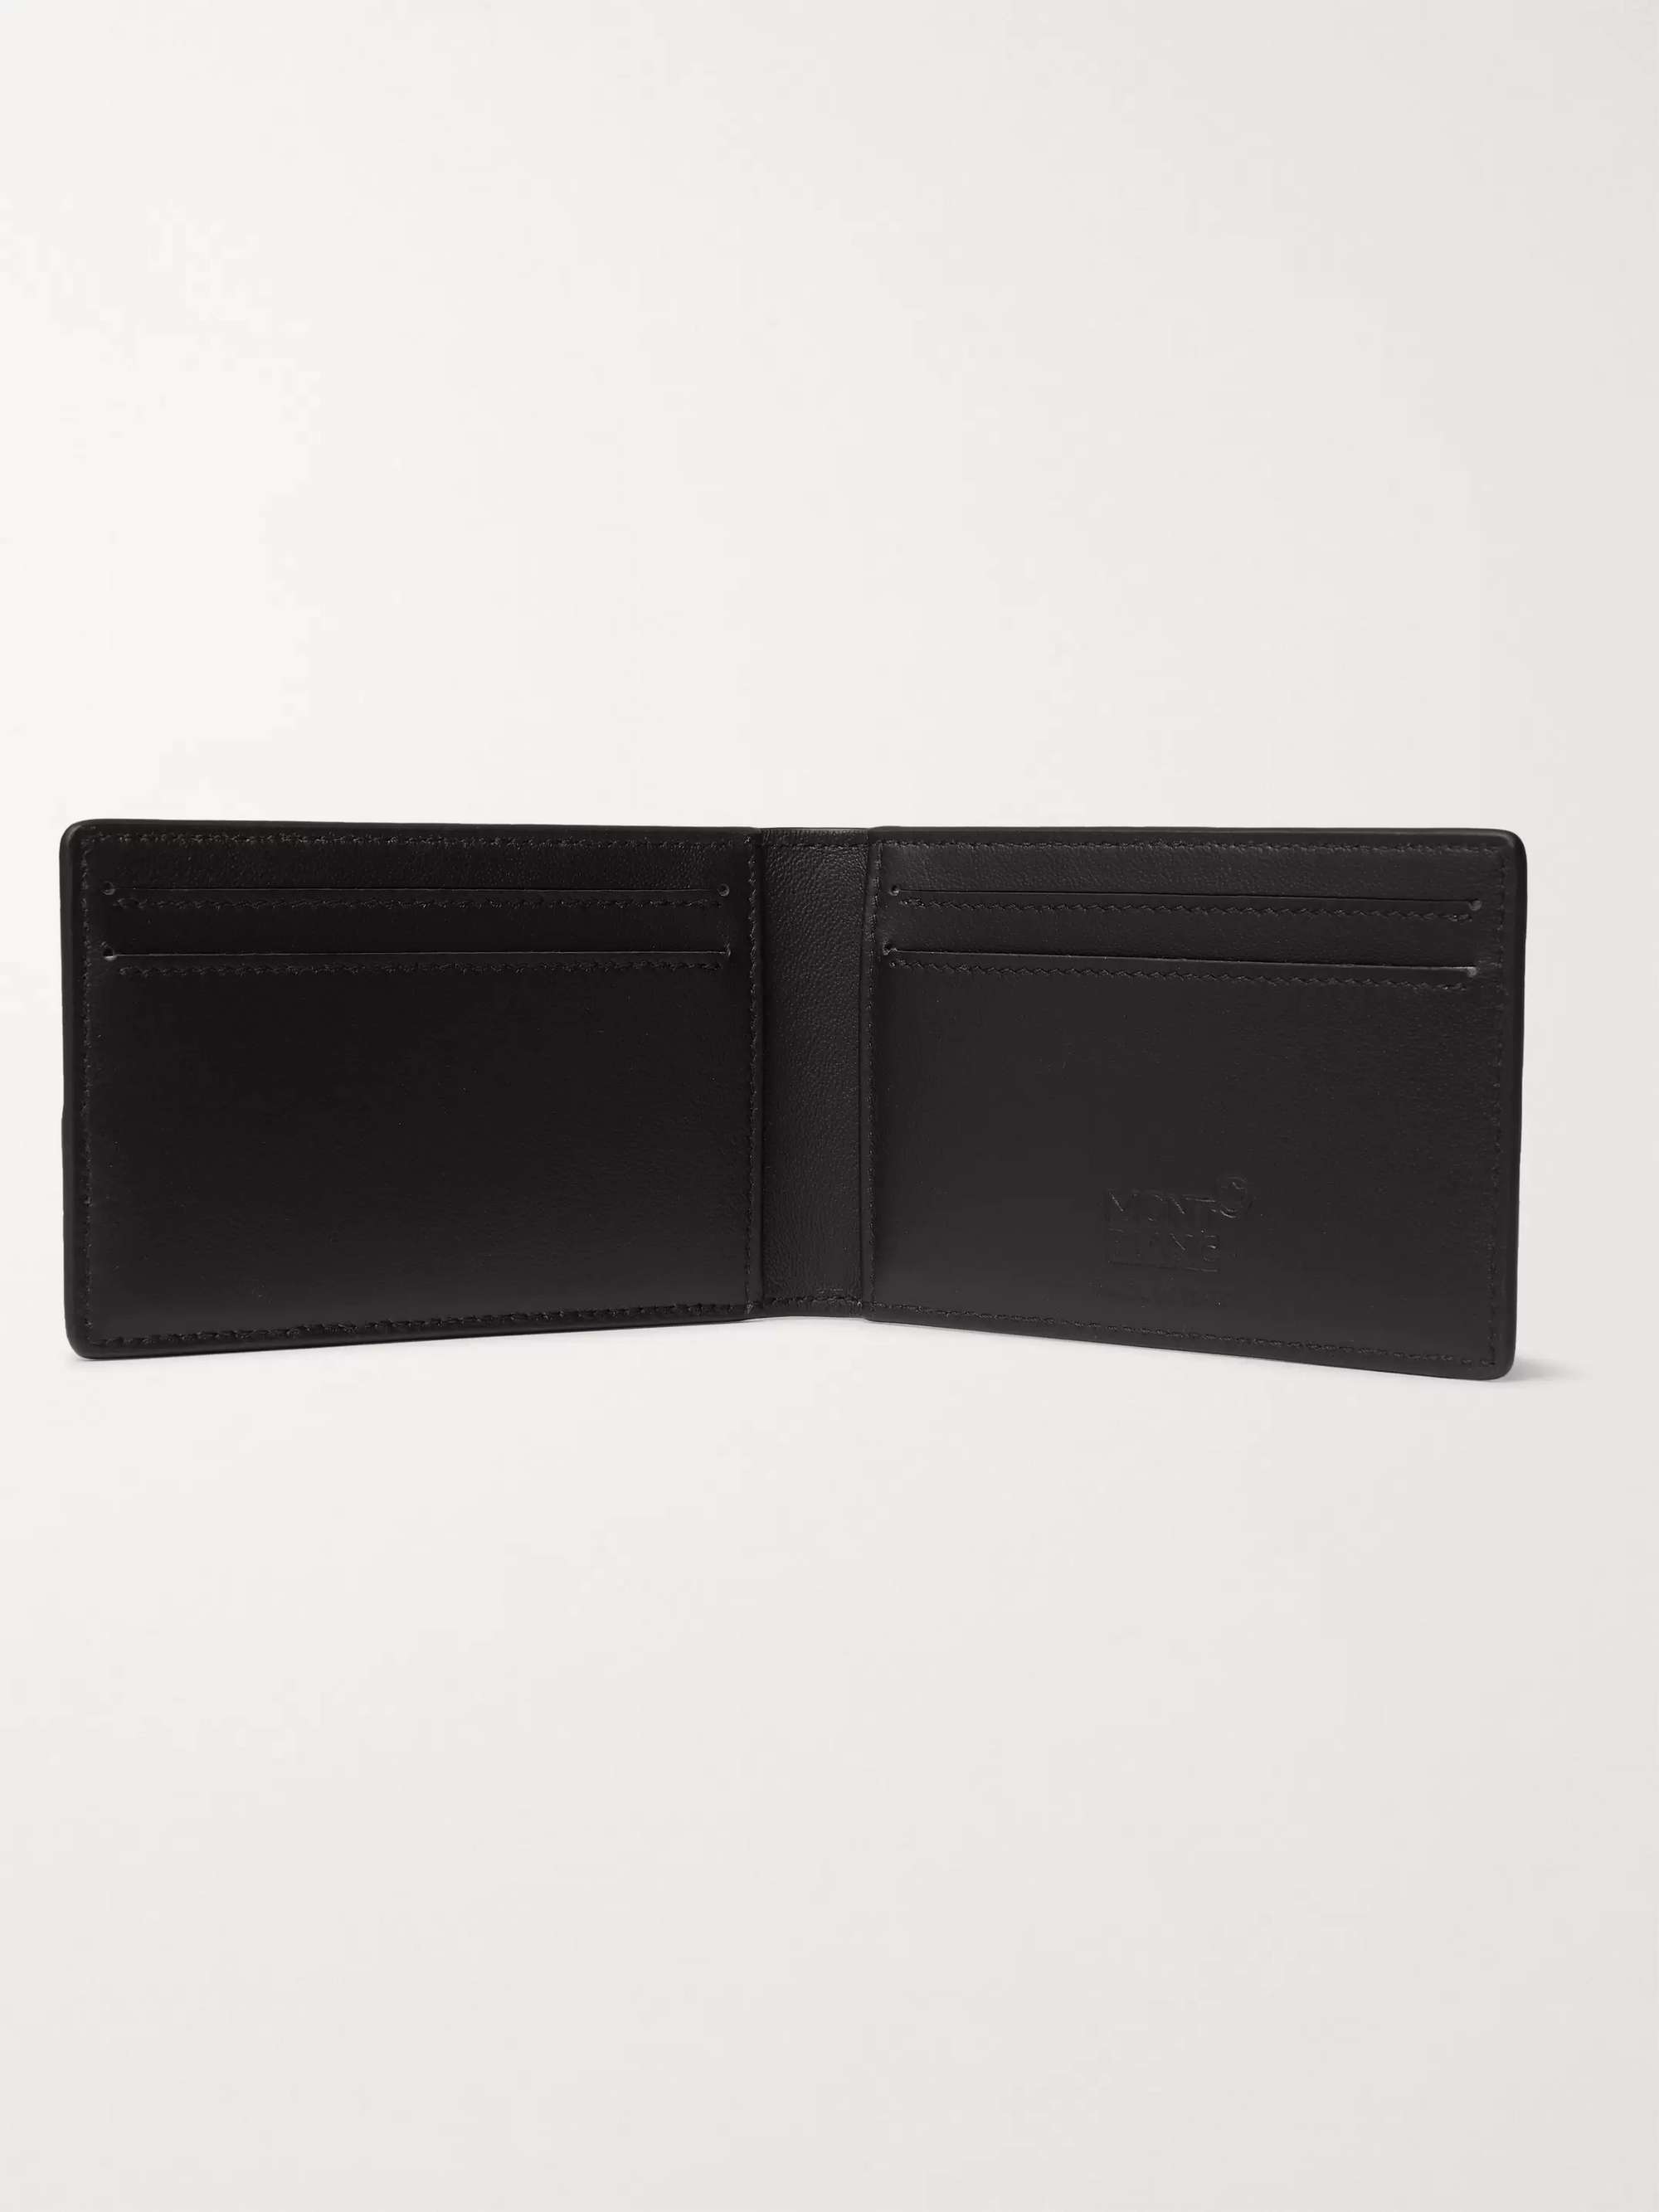 Black Croc-Effect Leather Bifold Cardholder | TOM FORD | MR PORTER